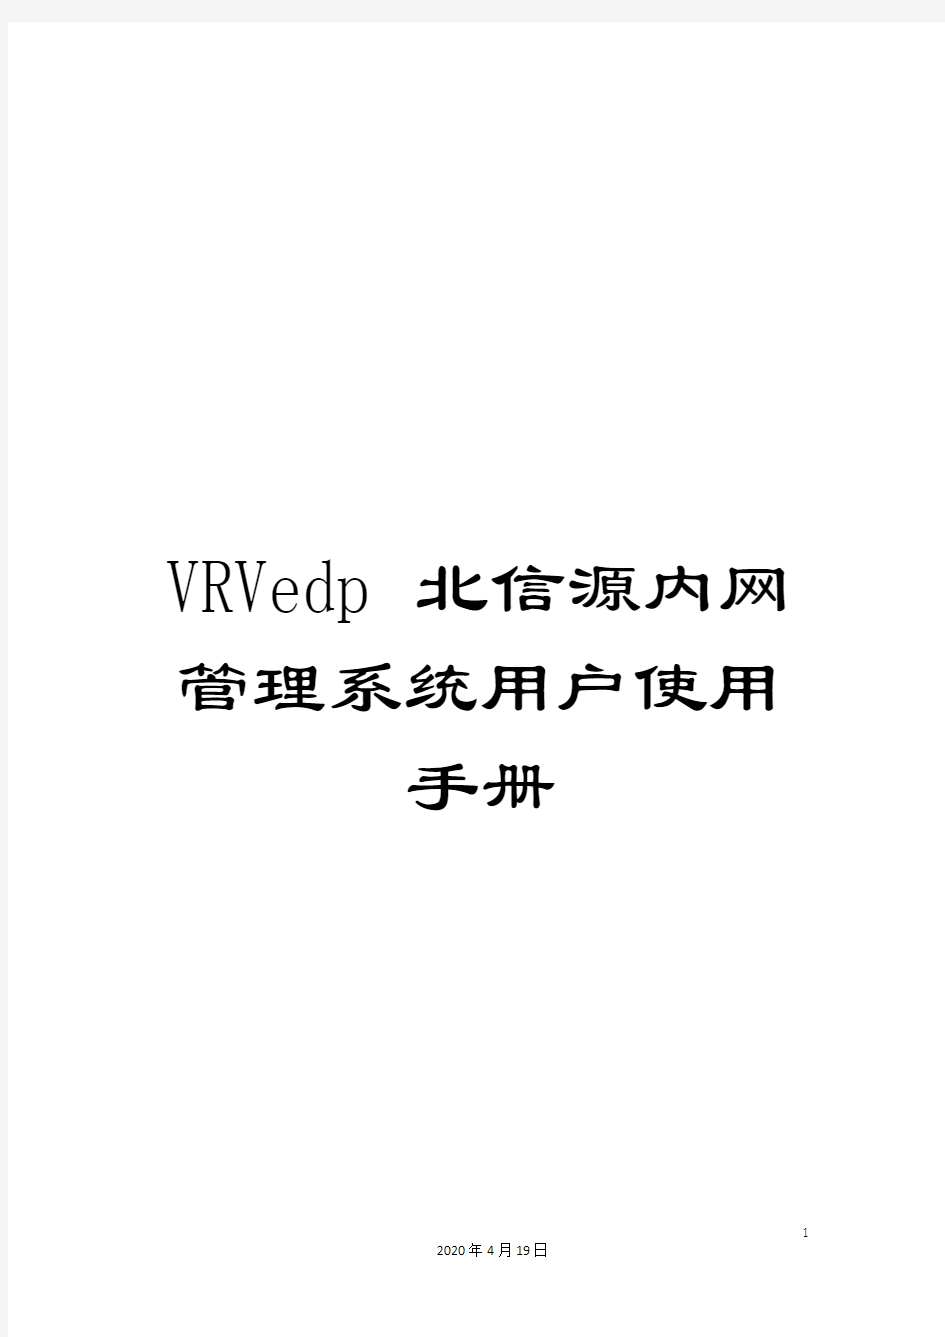 VRVedp北信源内网管理系统用户使用手册